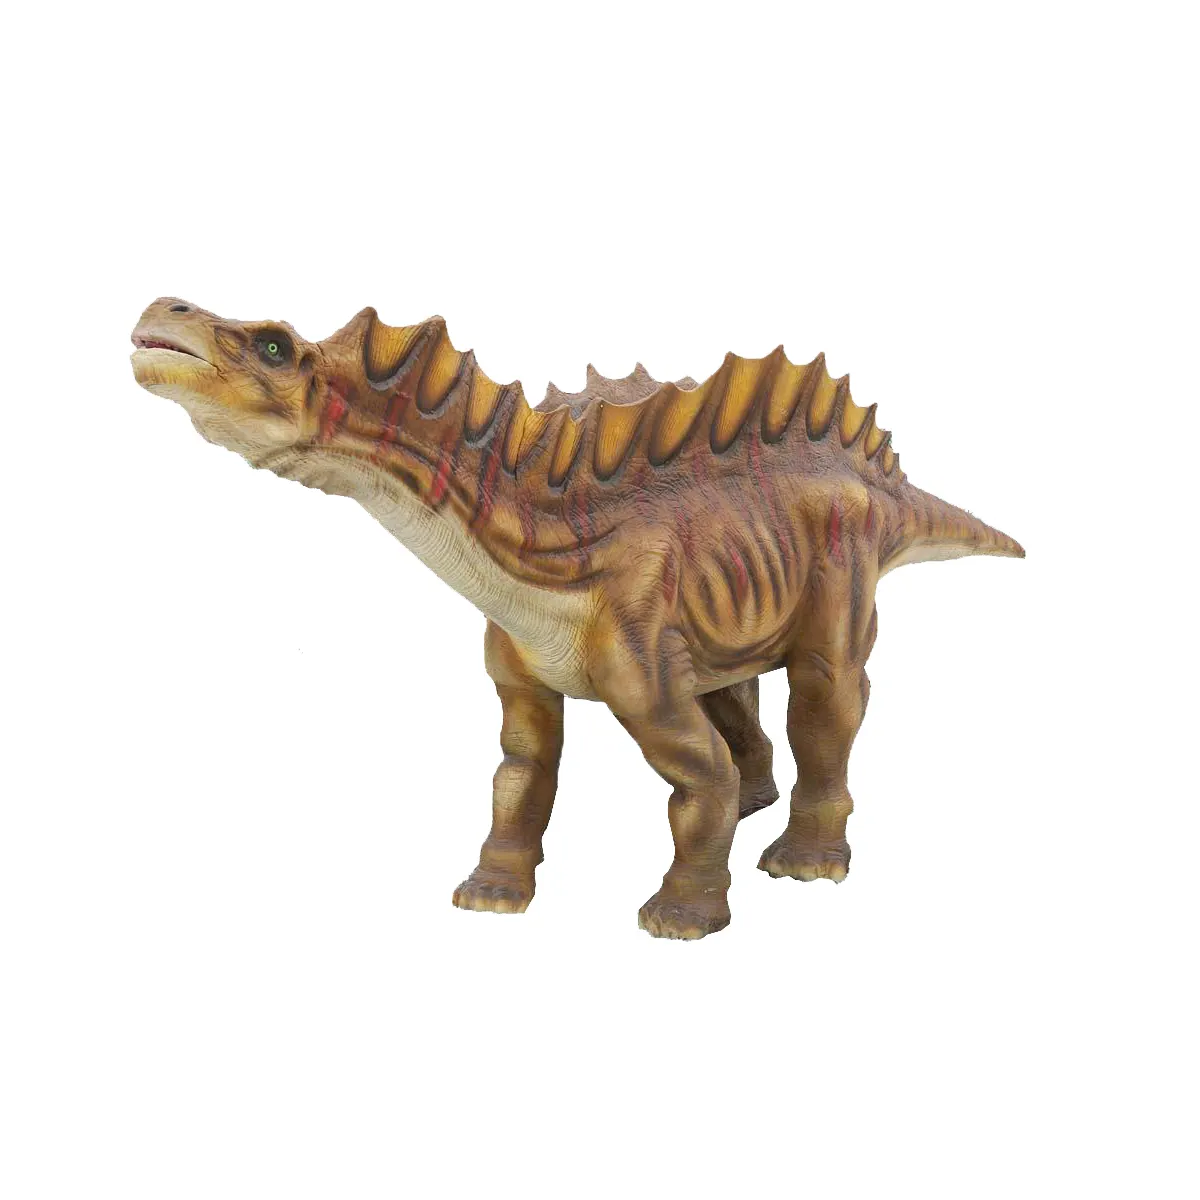 Grande modelo realístico comercial interativo do dinossauro para a mostra do parque temático do dinossauro